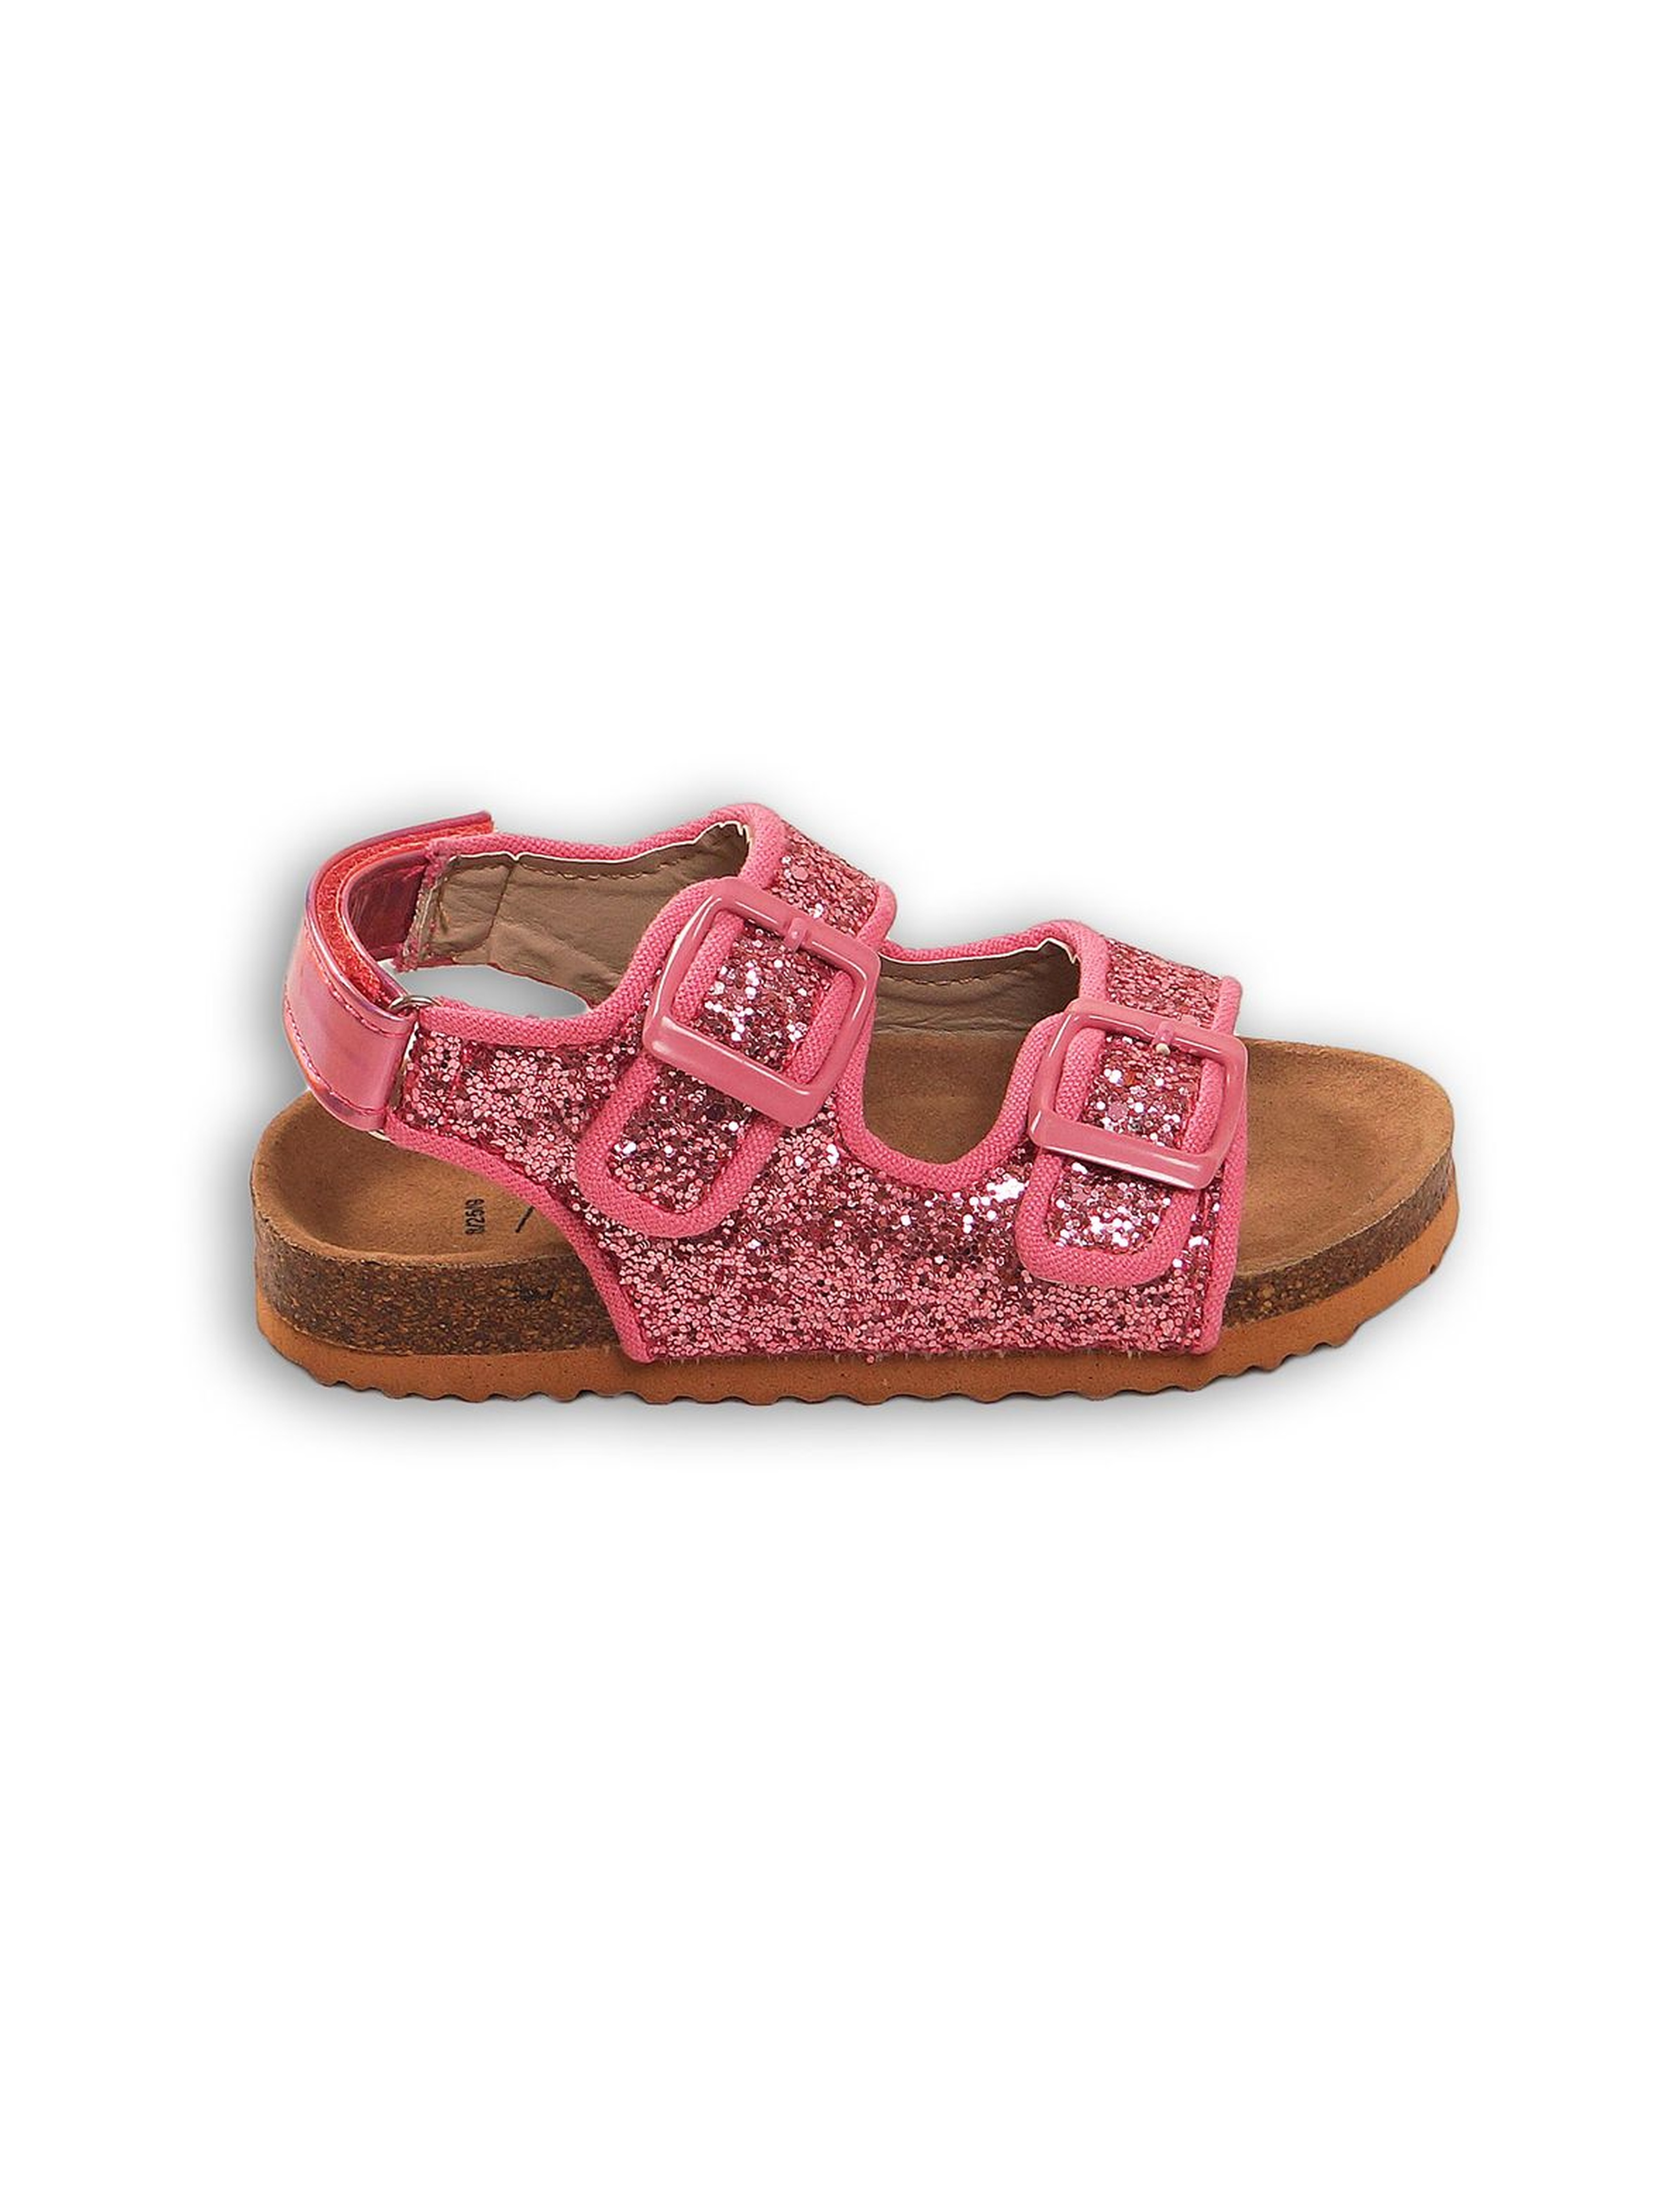 Sandały dla dziewczynki- różowe brokatowe